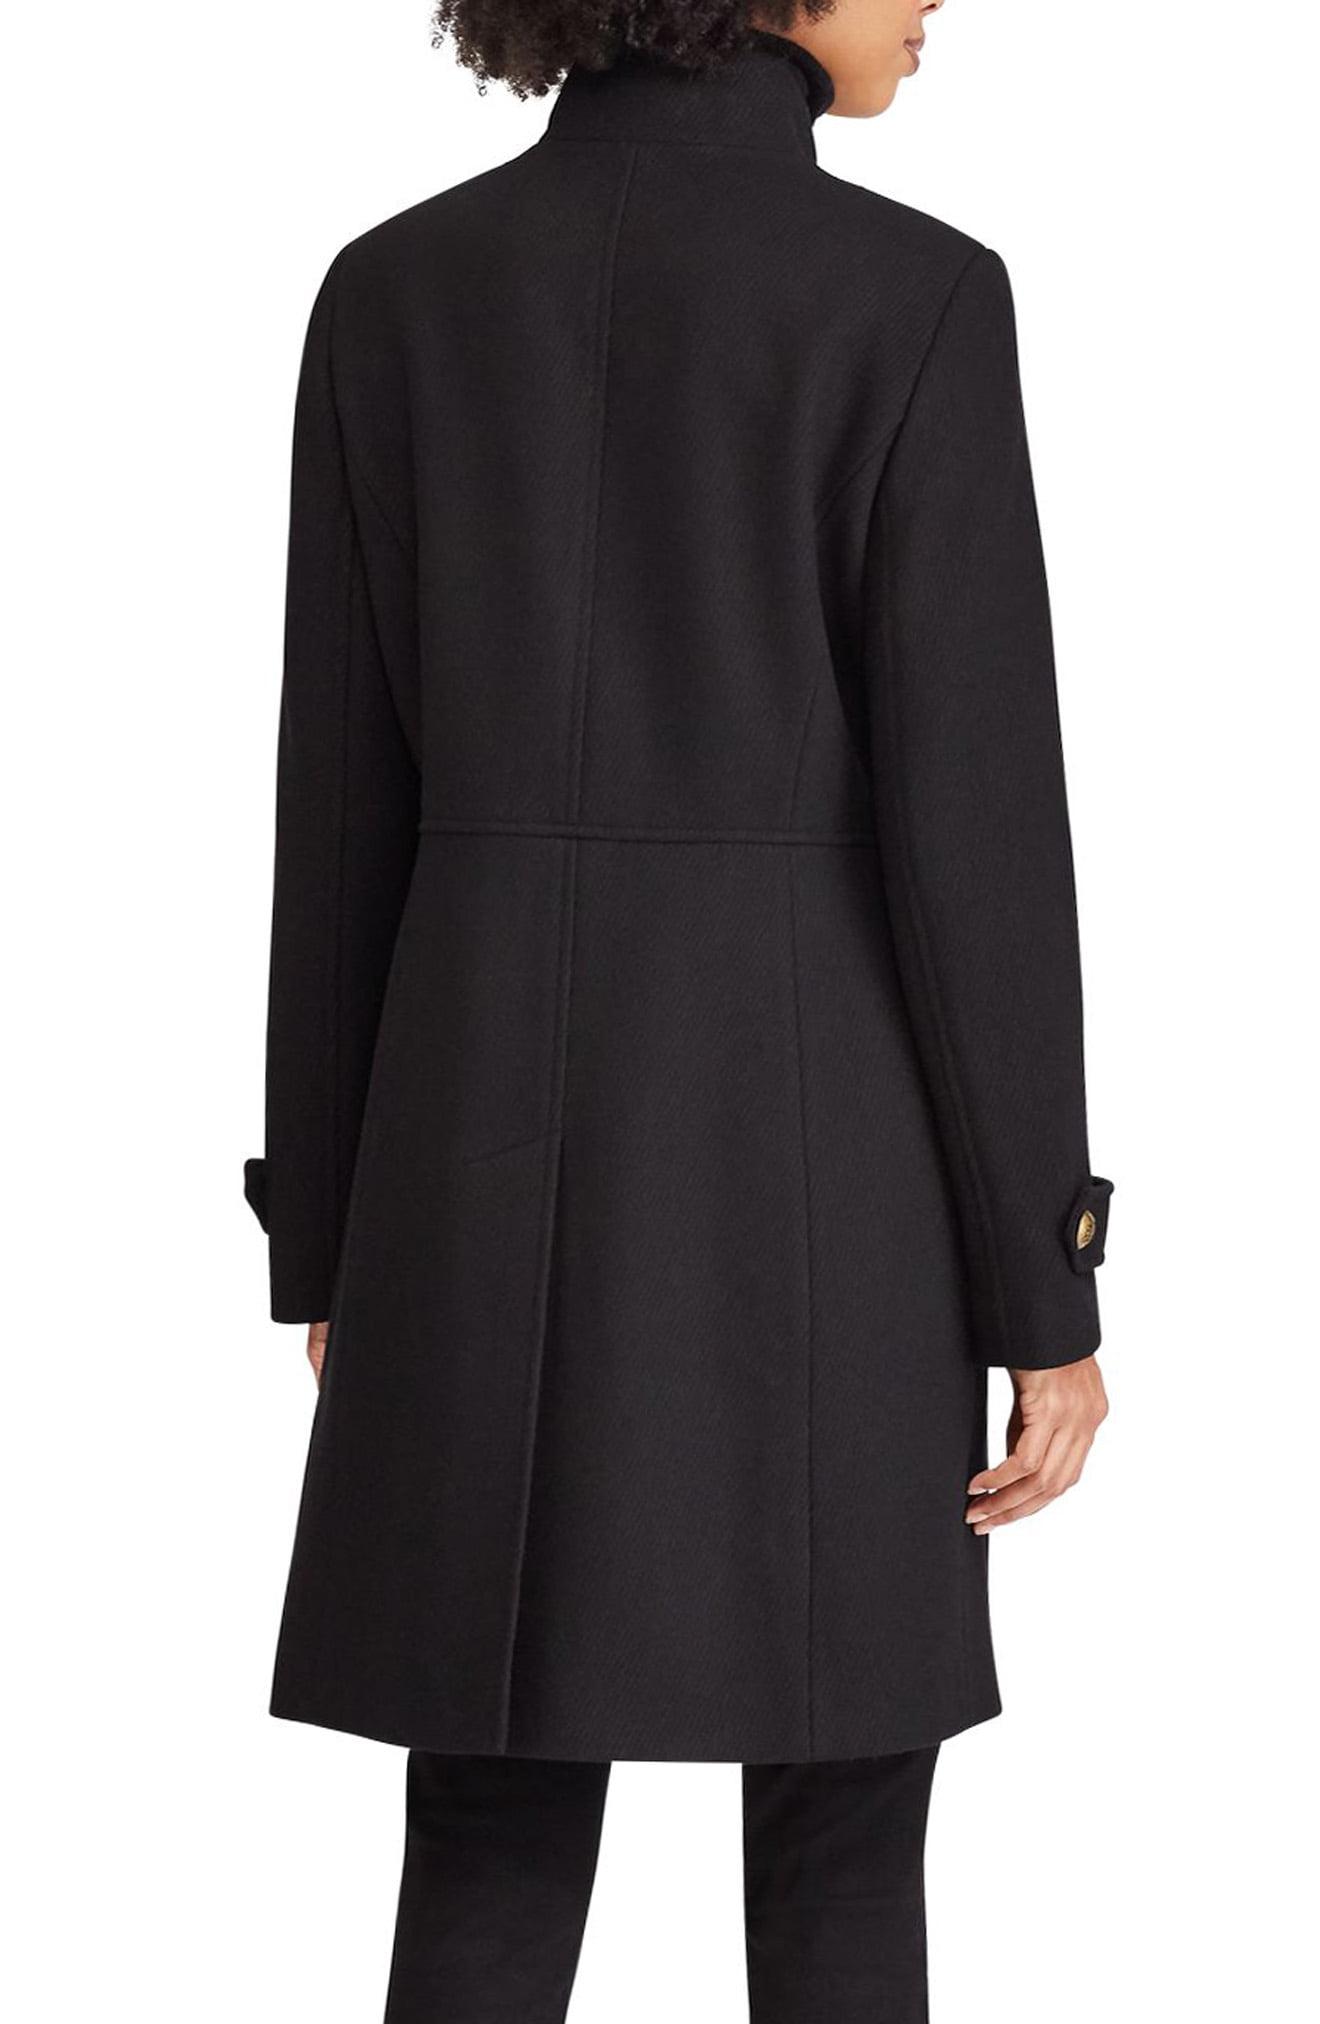 Lauren by Ralph Lauren Wool Blend Military Coat in Black - Lyst